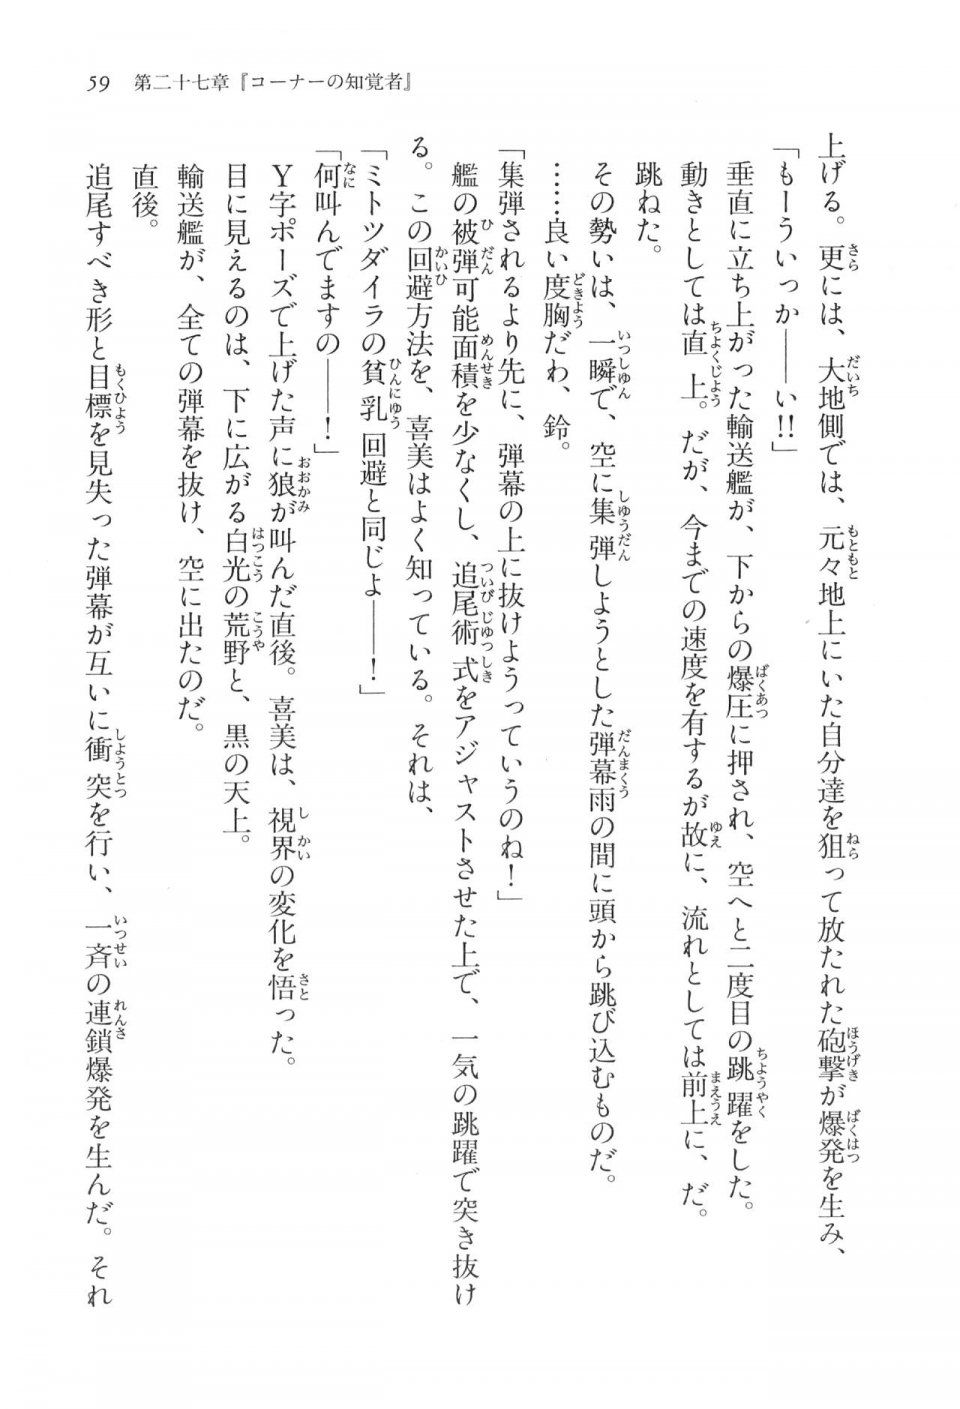 Kyoukai Senjou no Horizon LN Vol 17(7B) - Photo #59